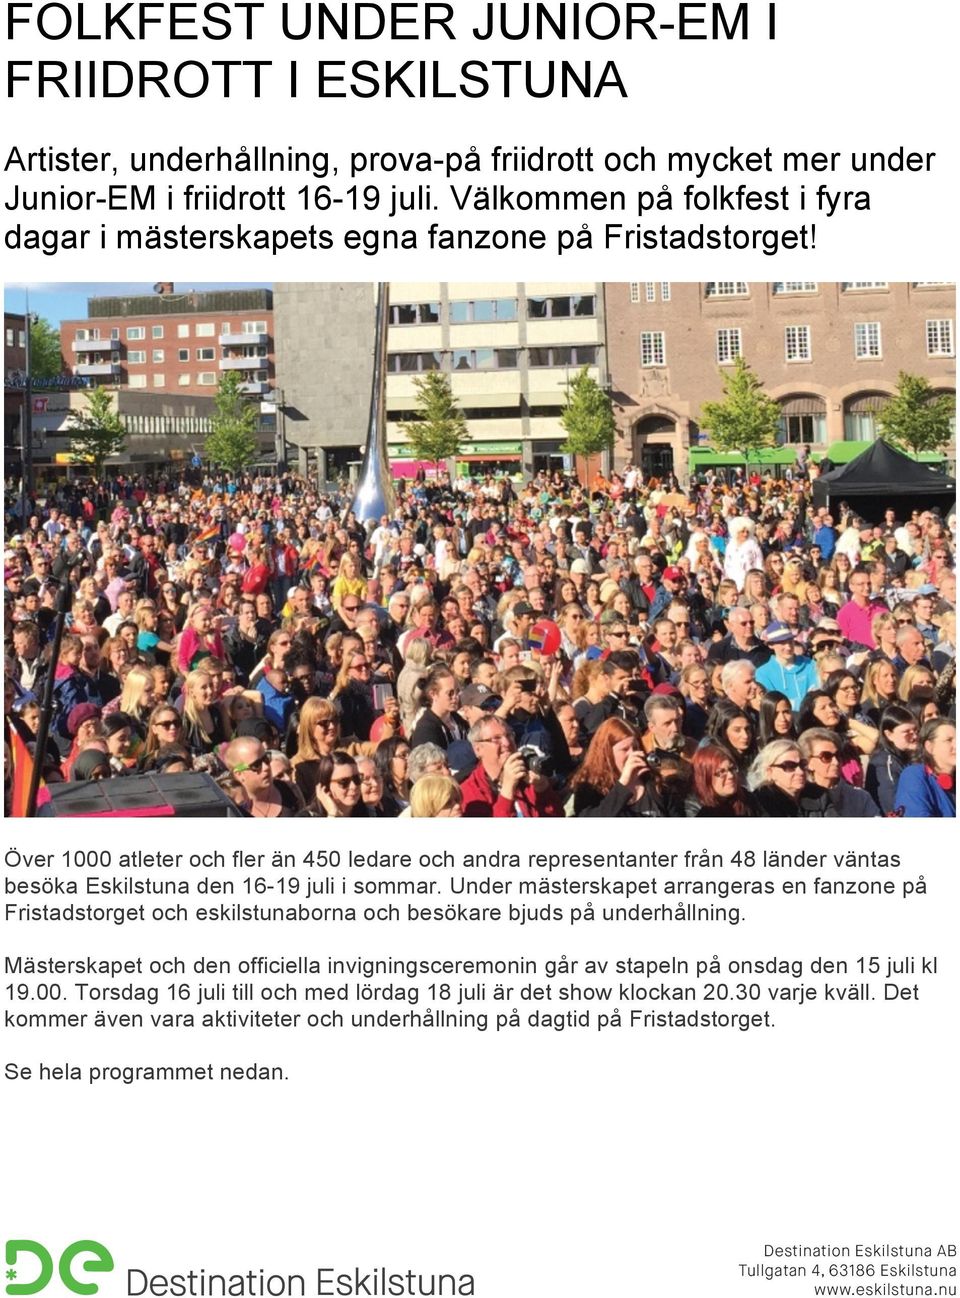 Över 1000 atleter och fler än 450 ledare och andra representanter från 48 länder väntas besöka Eskilstuna den 16-19 juli i sommar.